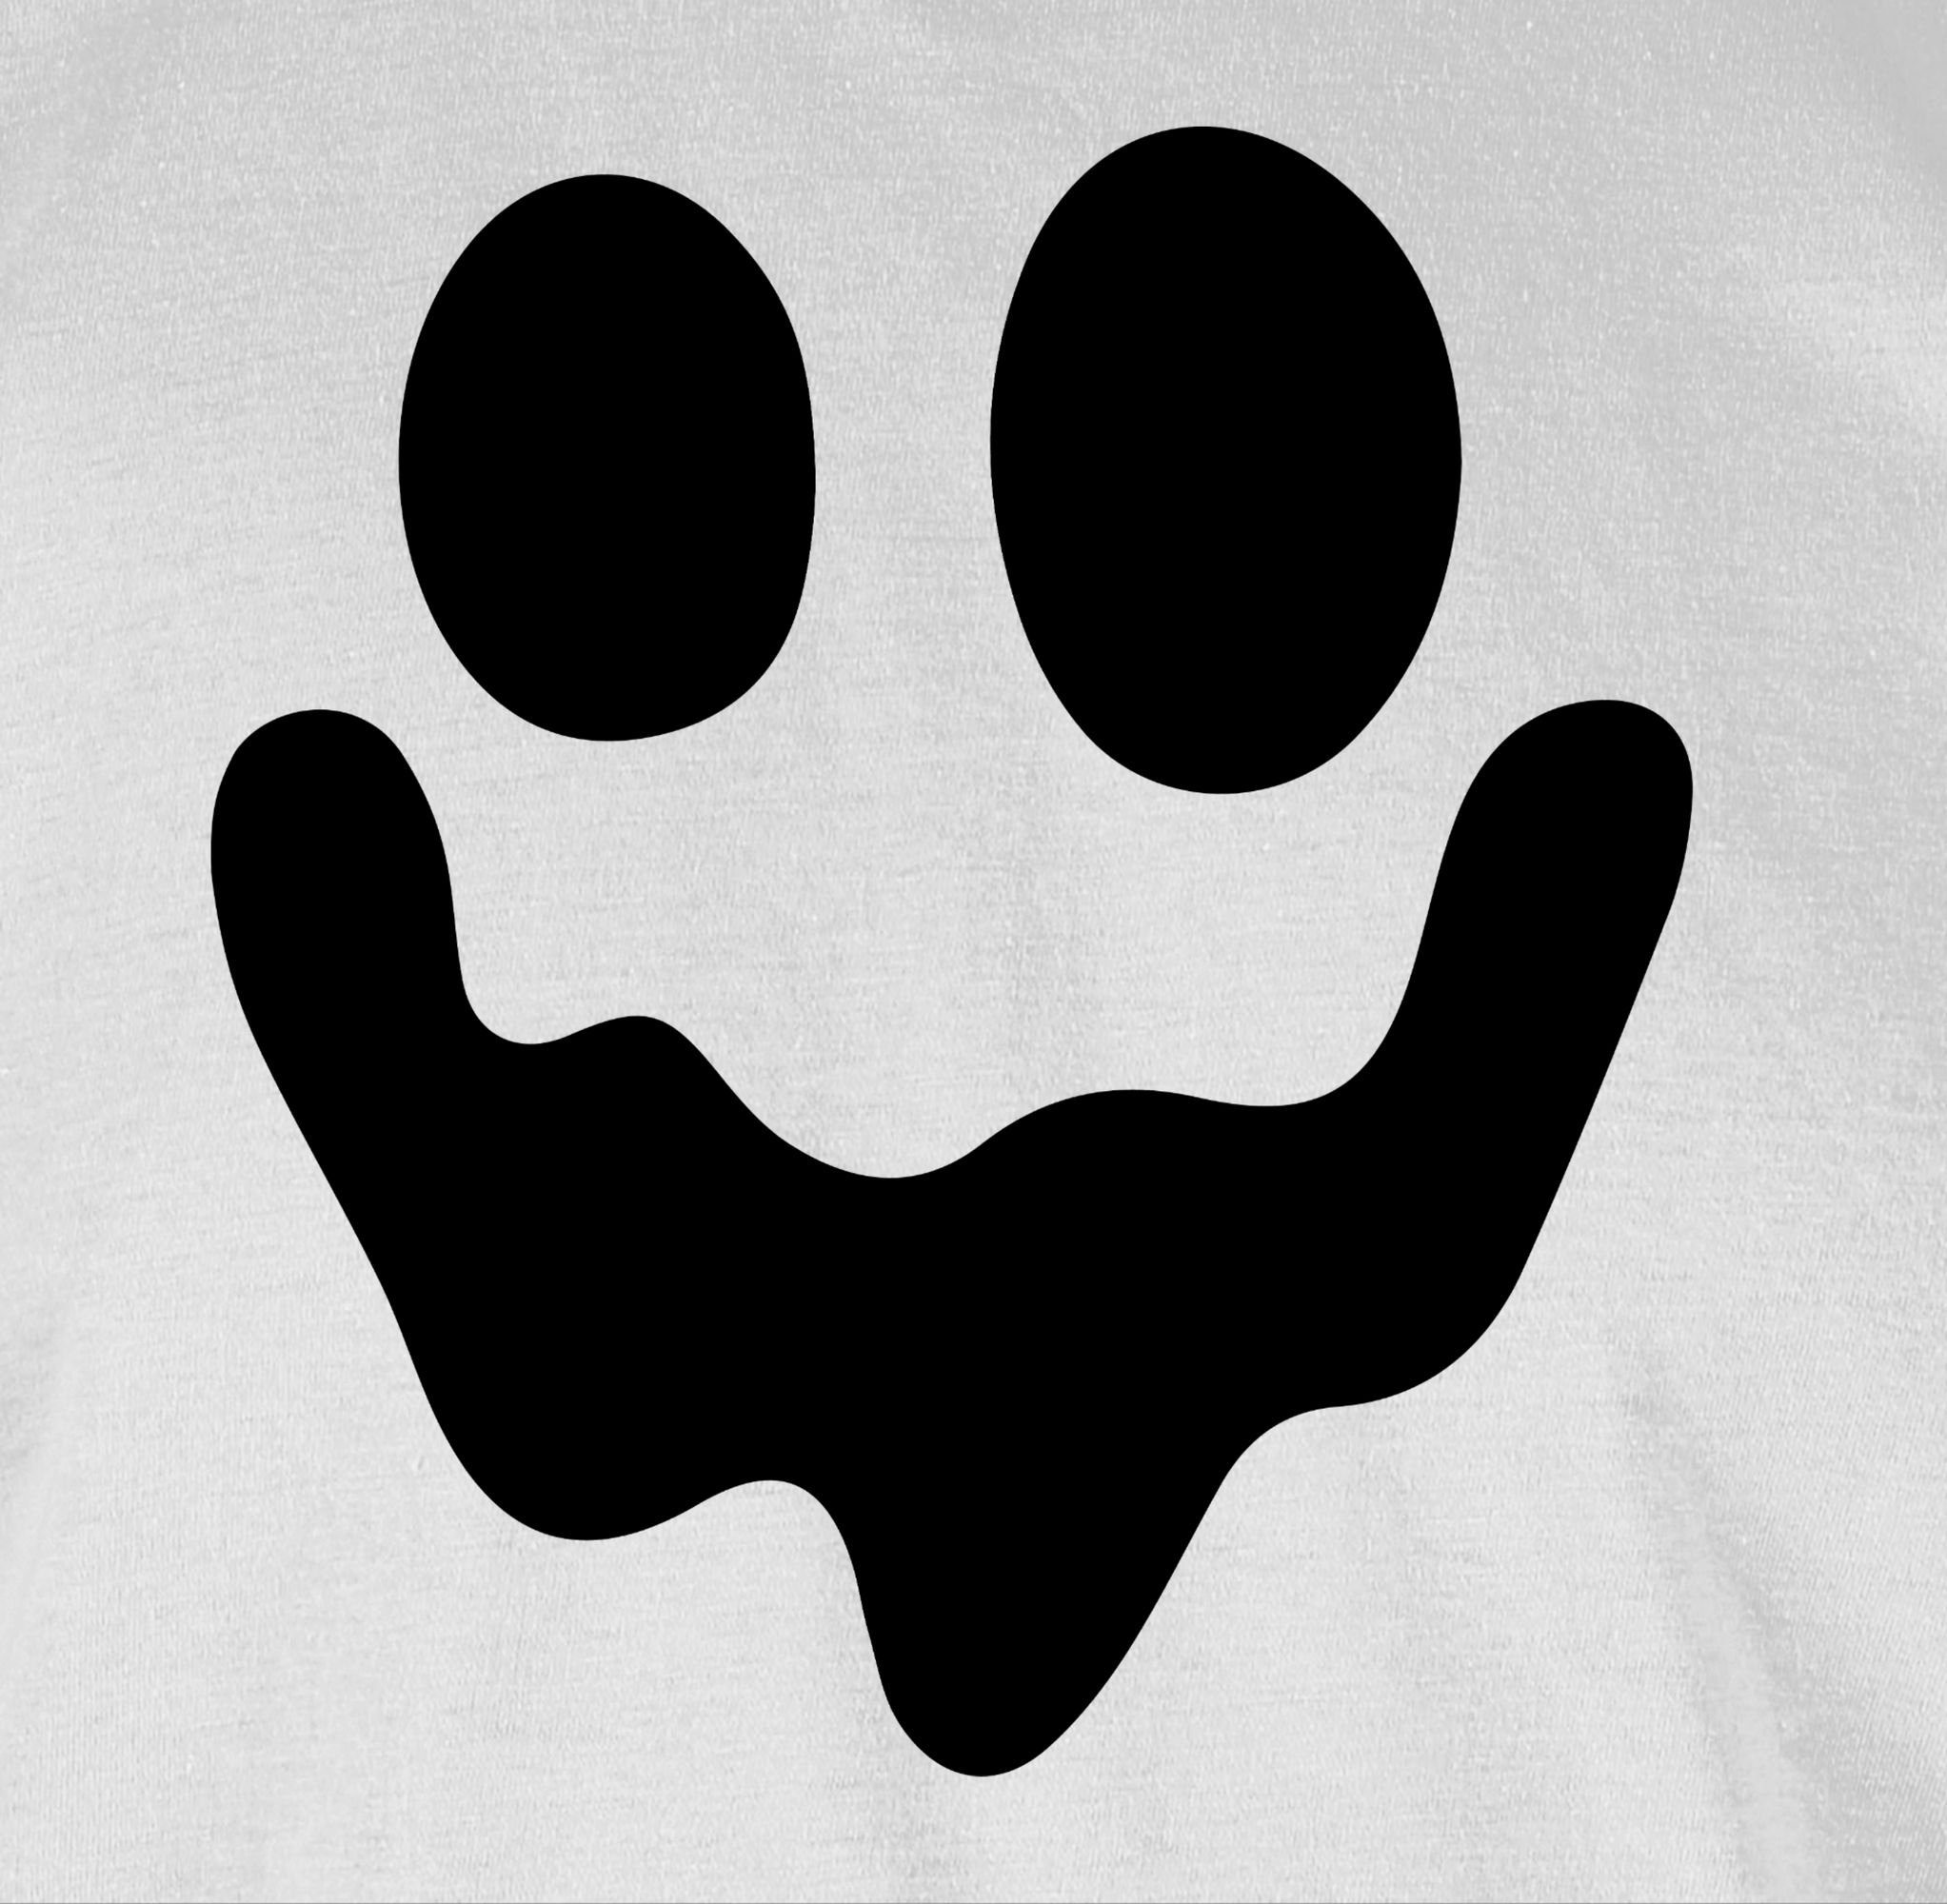 Kostüme Einfach Spuk 01 Herren Geist Shirtracer Weiß Gruselig T-Shirt Halloween Gespenst